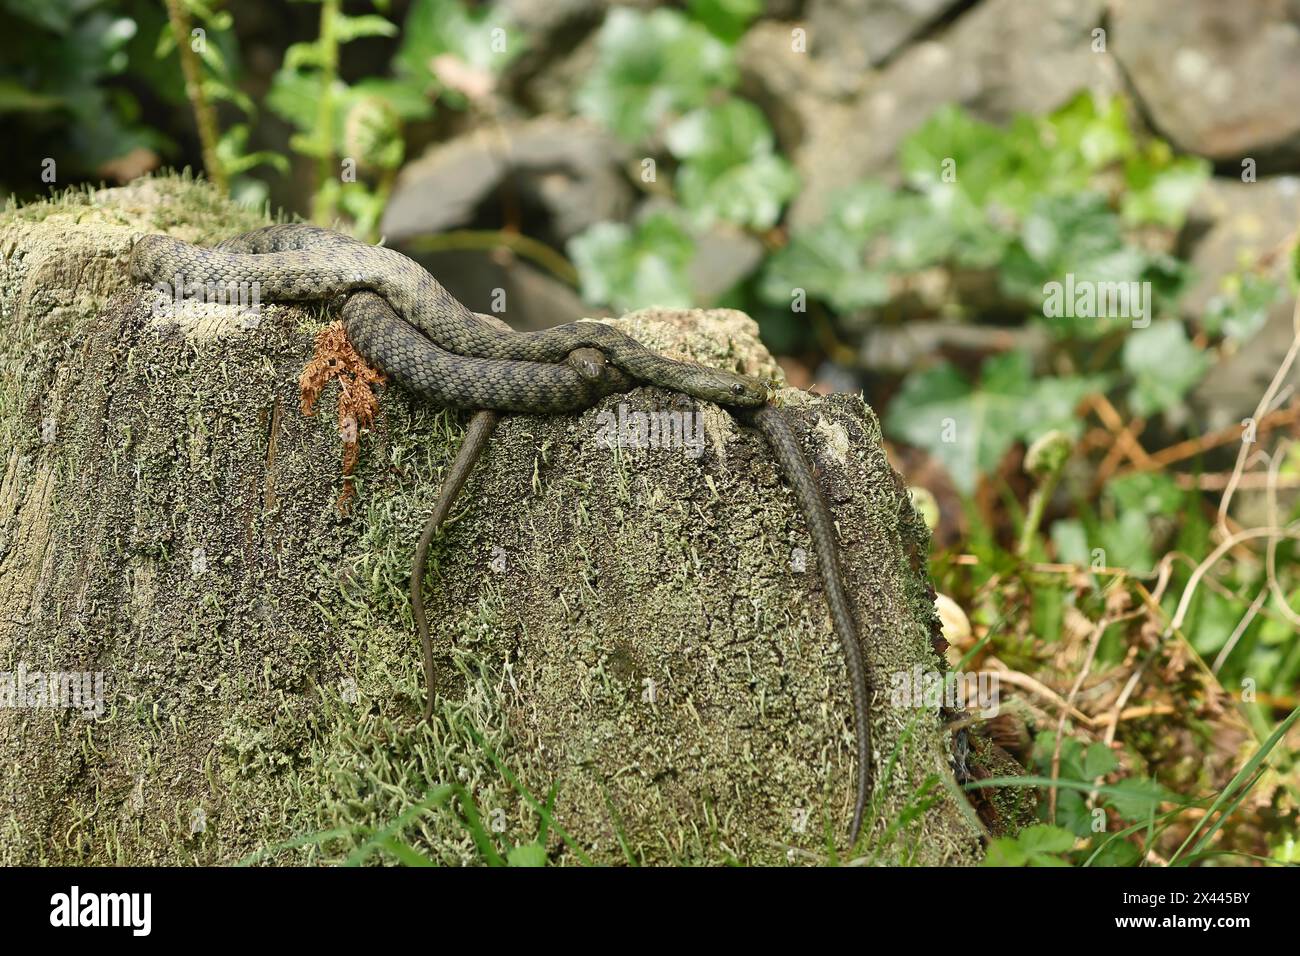 Serpent en dés (Natrix tessellata) paire d'animaux couchés enchevêtrés sur une souche d'arbre, Hesse, Allemagne Banque D'Images